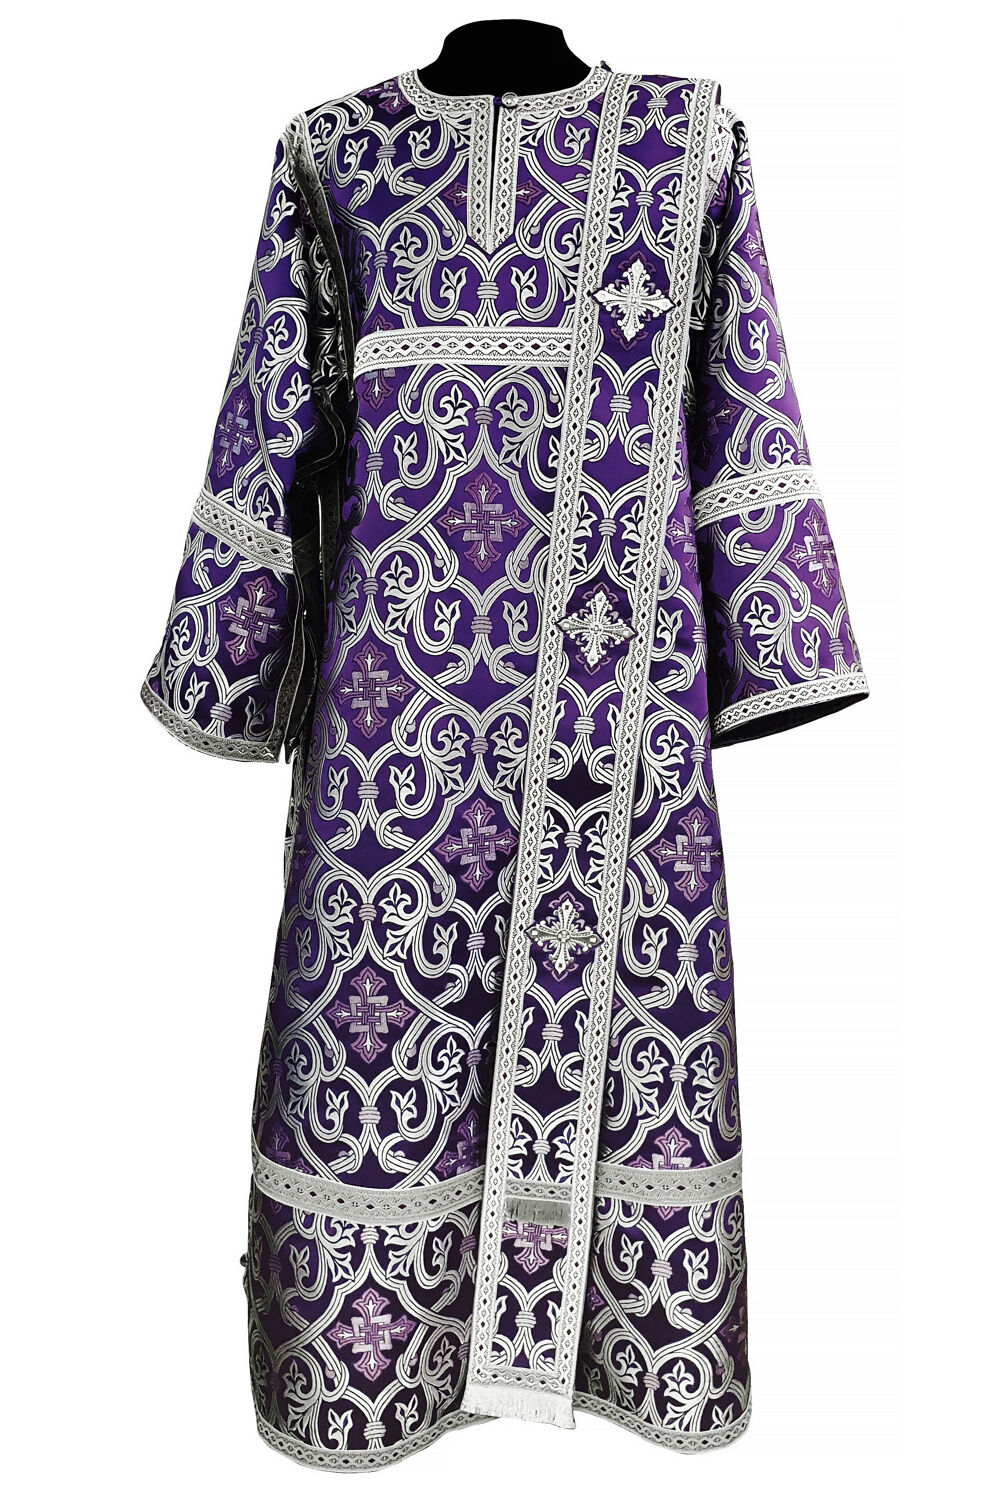 Deacon's Vestment violet